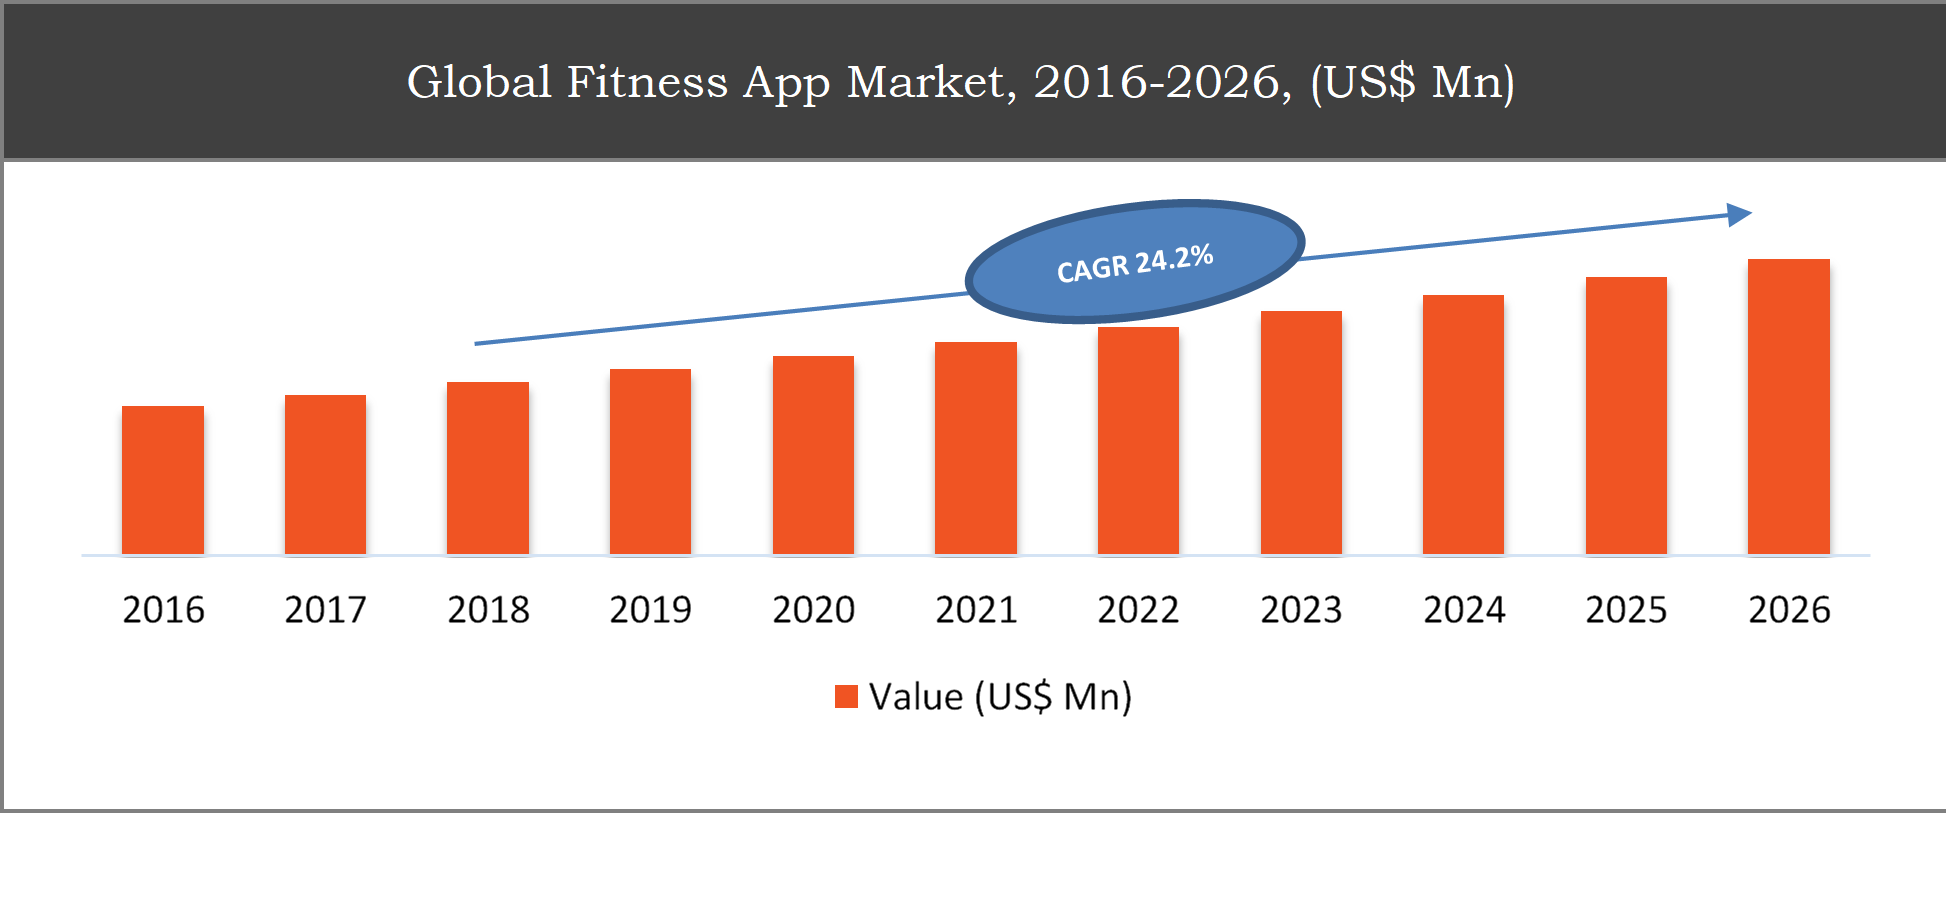 Fitness App Market